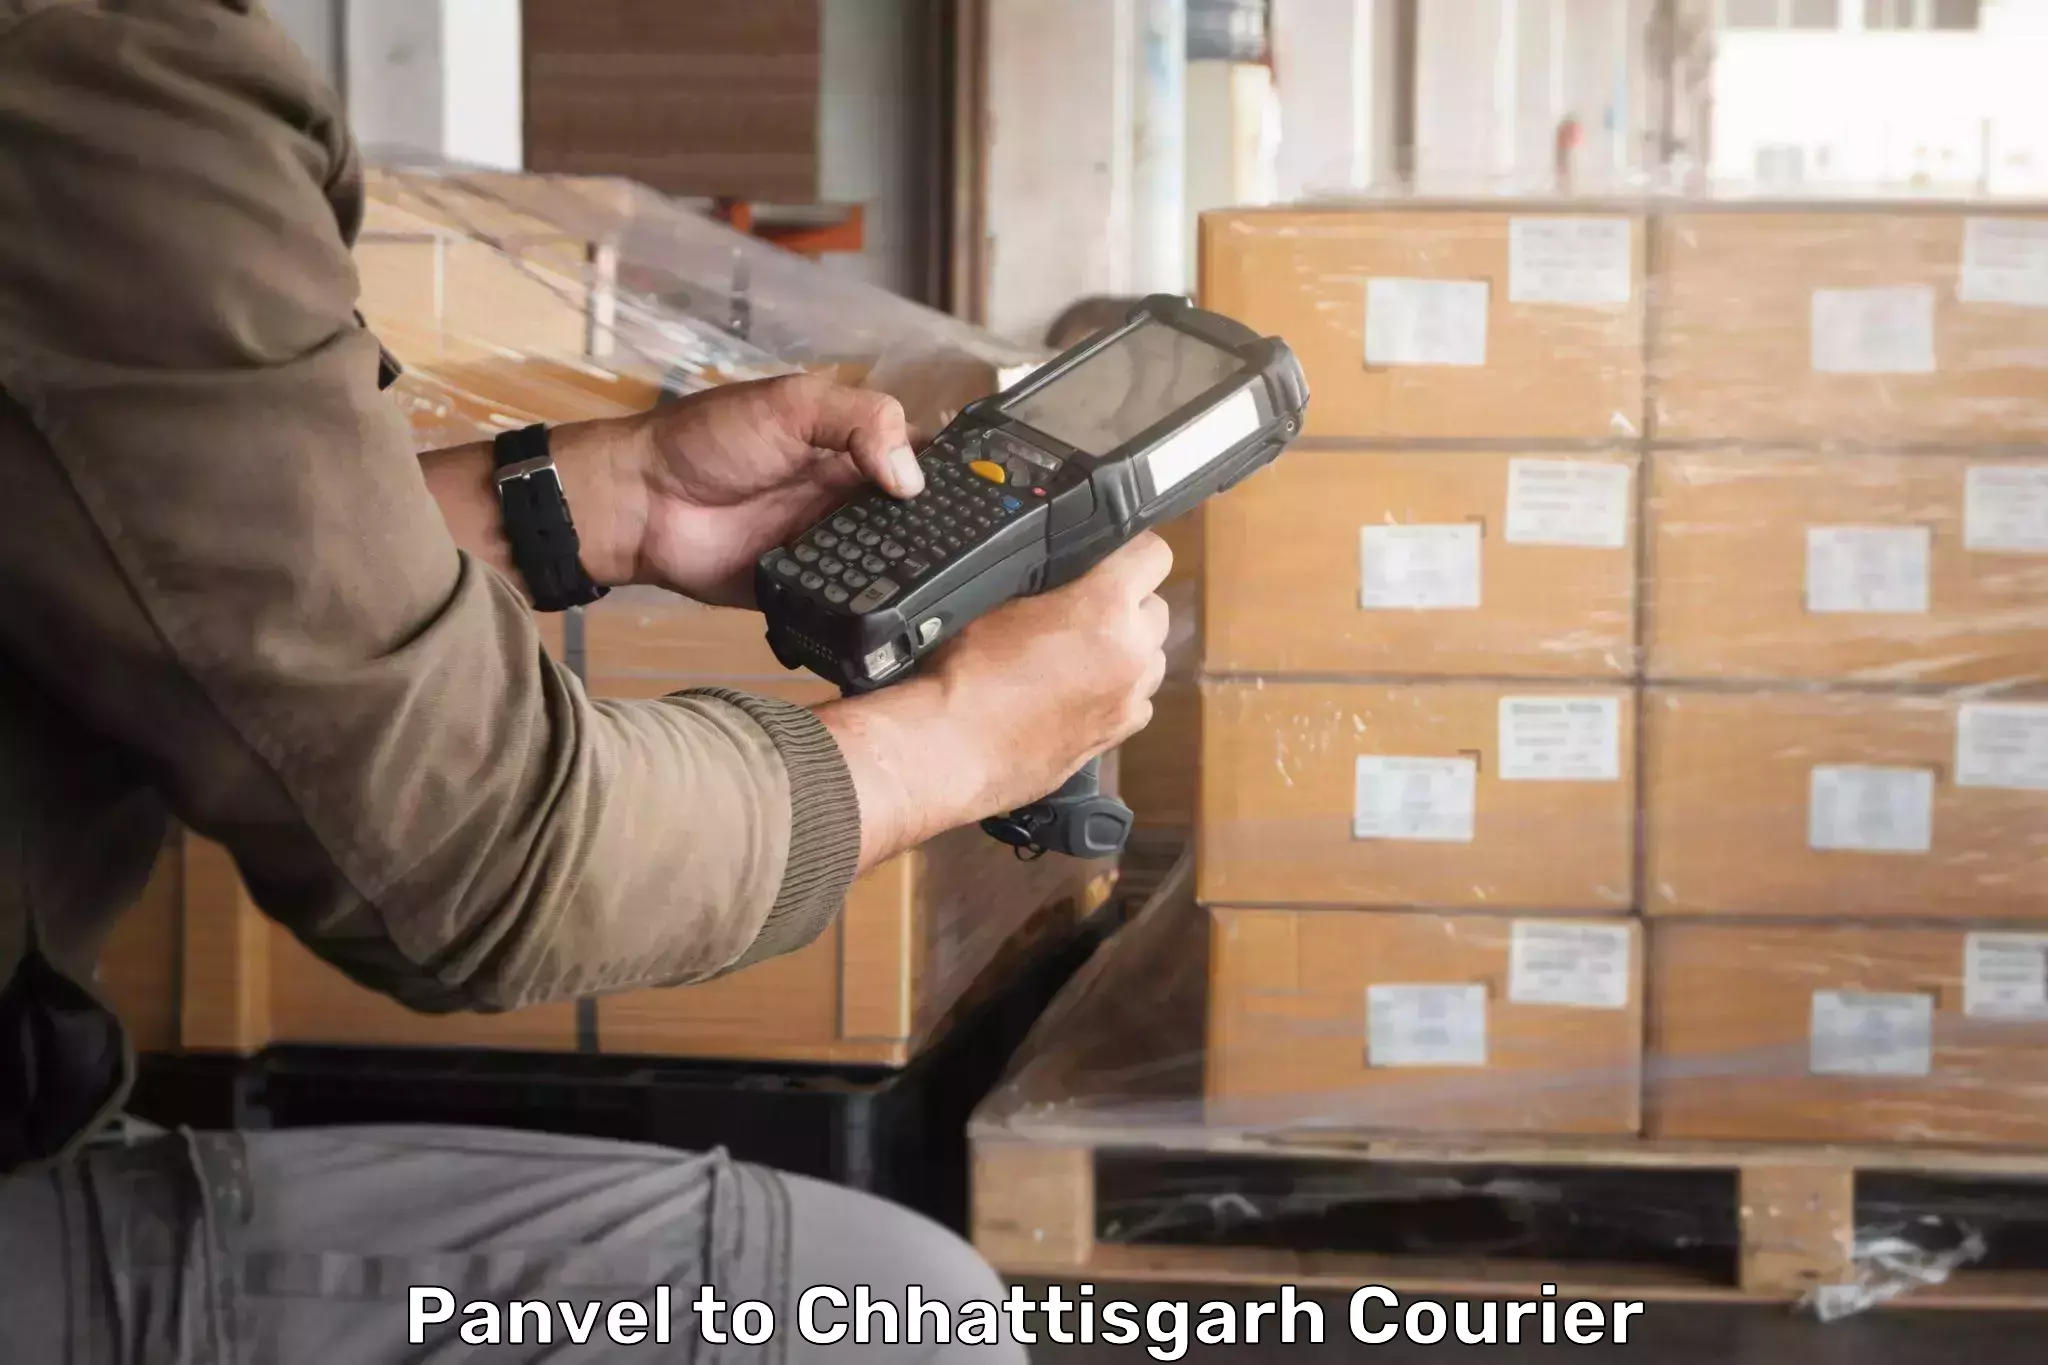 Express logistics providers Panvel to Dongargarh